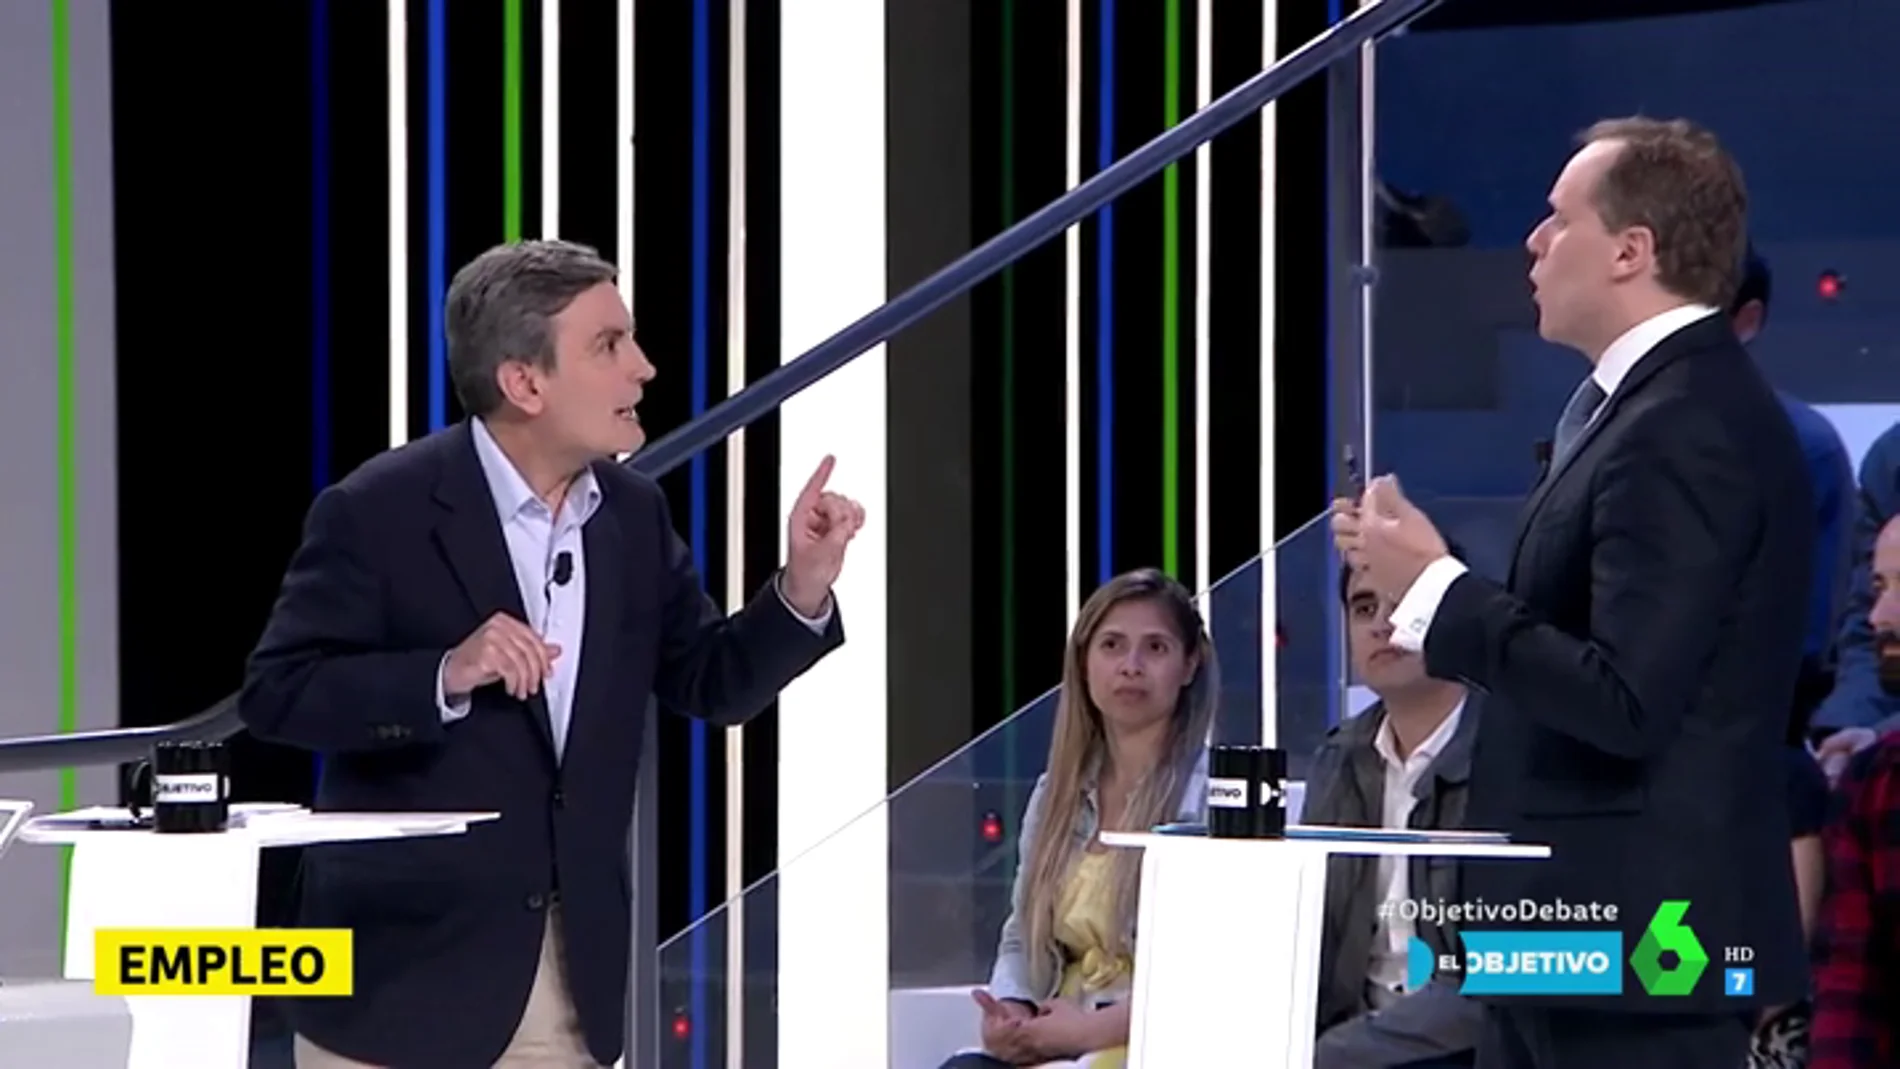 Cruce de acusaciones entre Pedro Saura y Daniel Lacalle: "La alternativa que está ofreciendo el PP es ultraliberal, es un sálvese quien pueda"